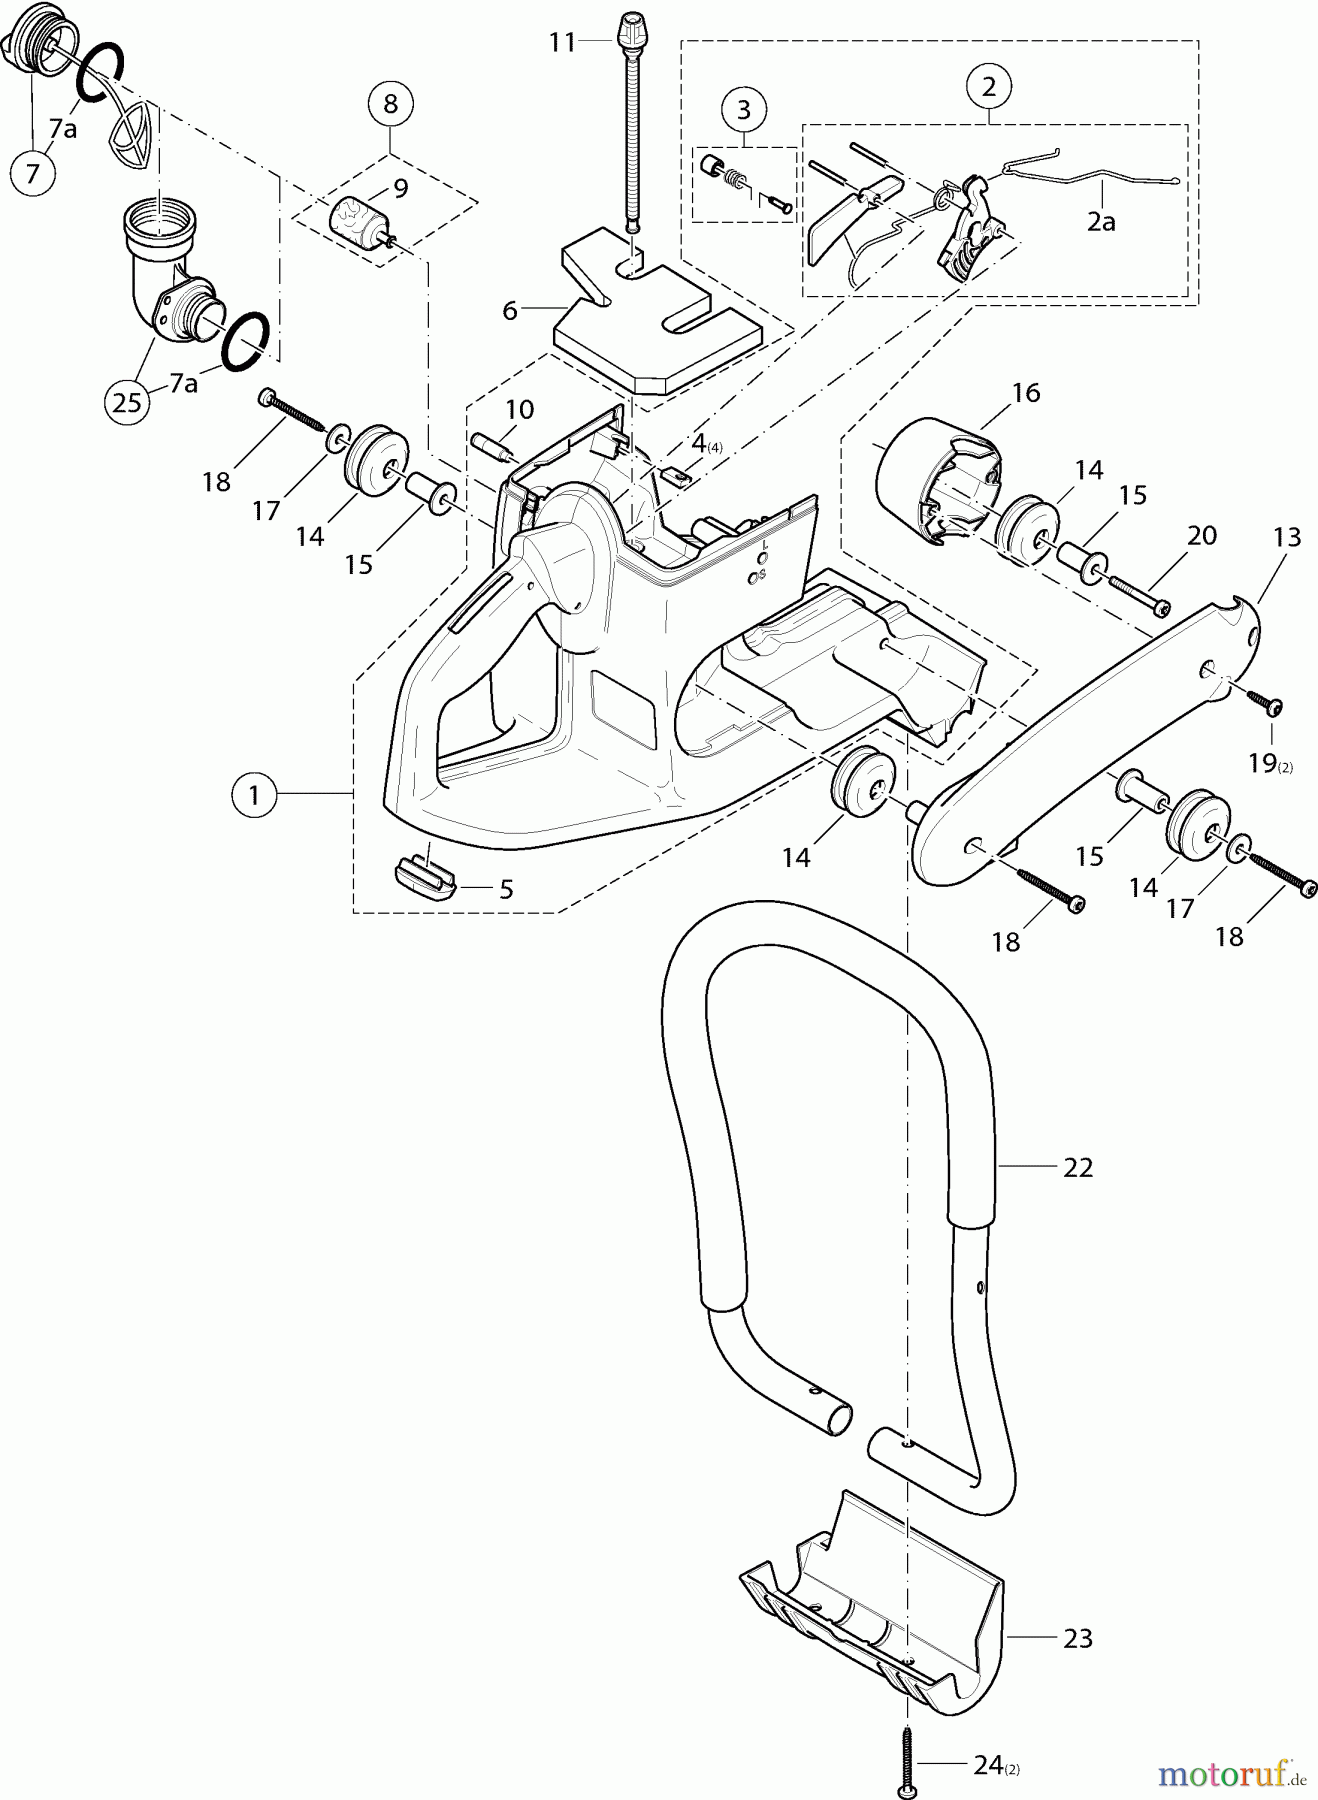  Dolmar Trennschleifer Benzin PC-6212 2  Tankeinheit und Handgriffe